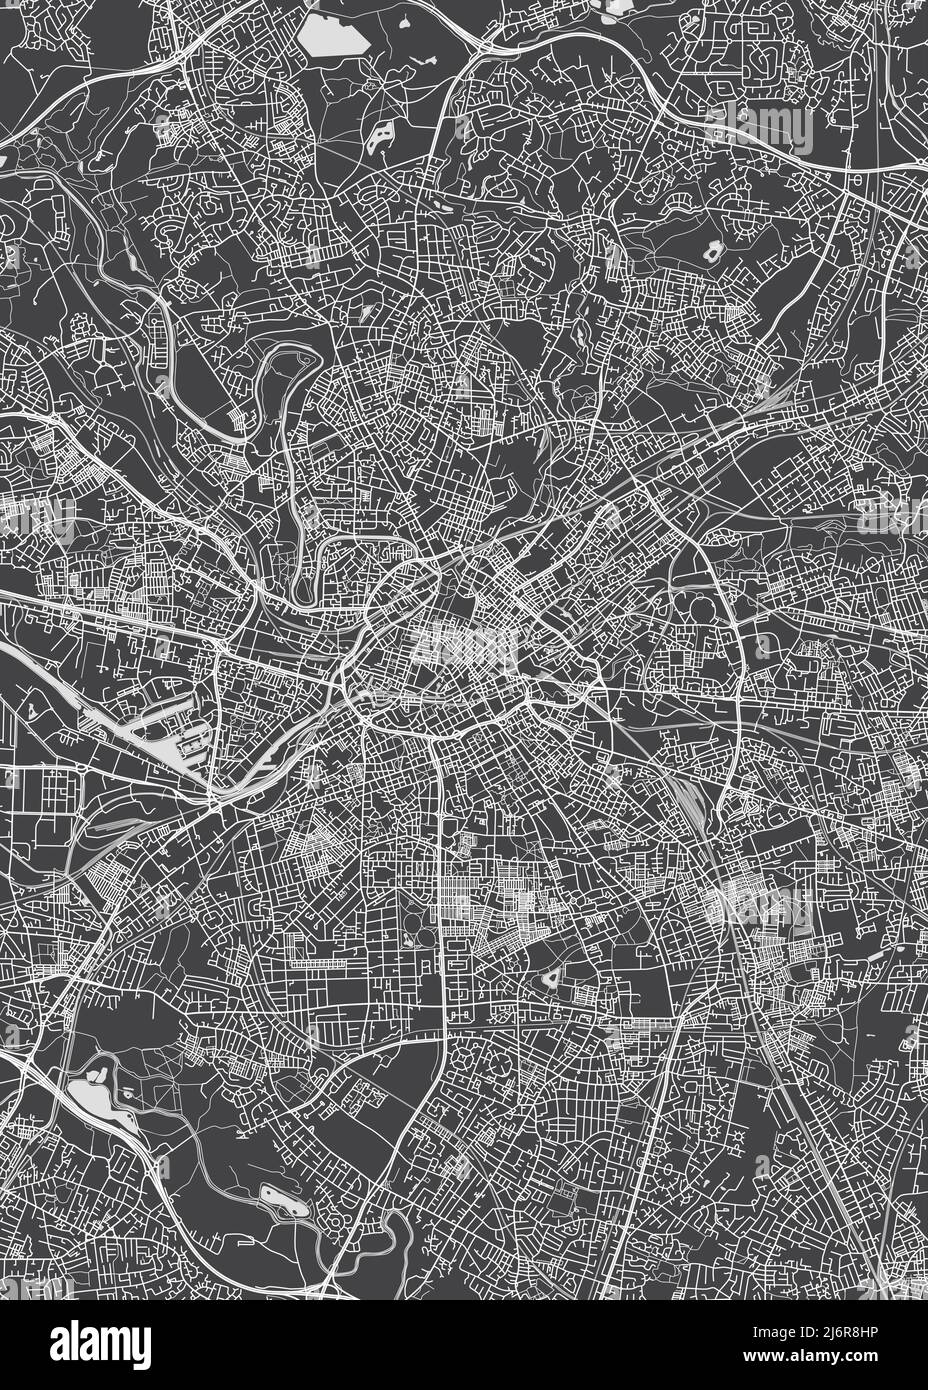 Stadtplan Manchester, monochromer Detailplan, Vektorgrafik Stock Vektor